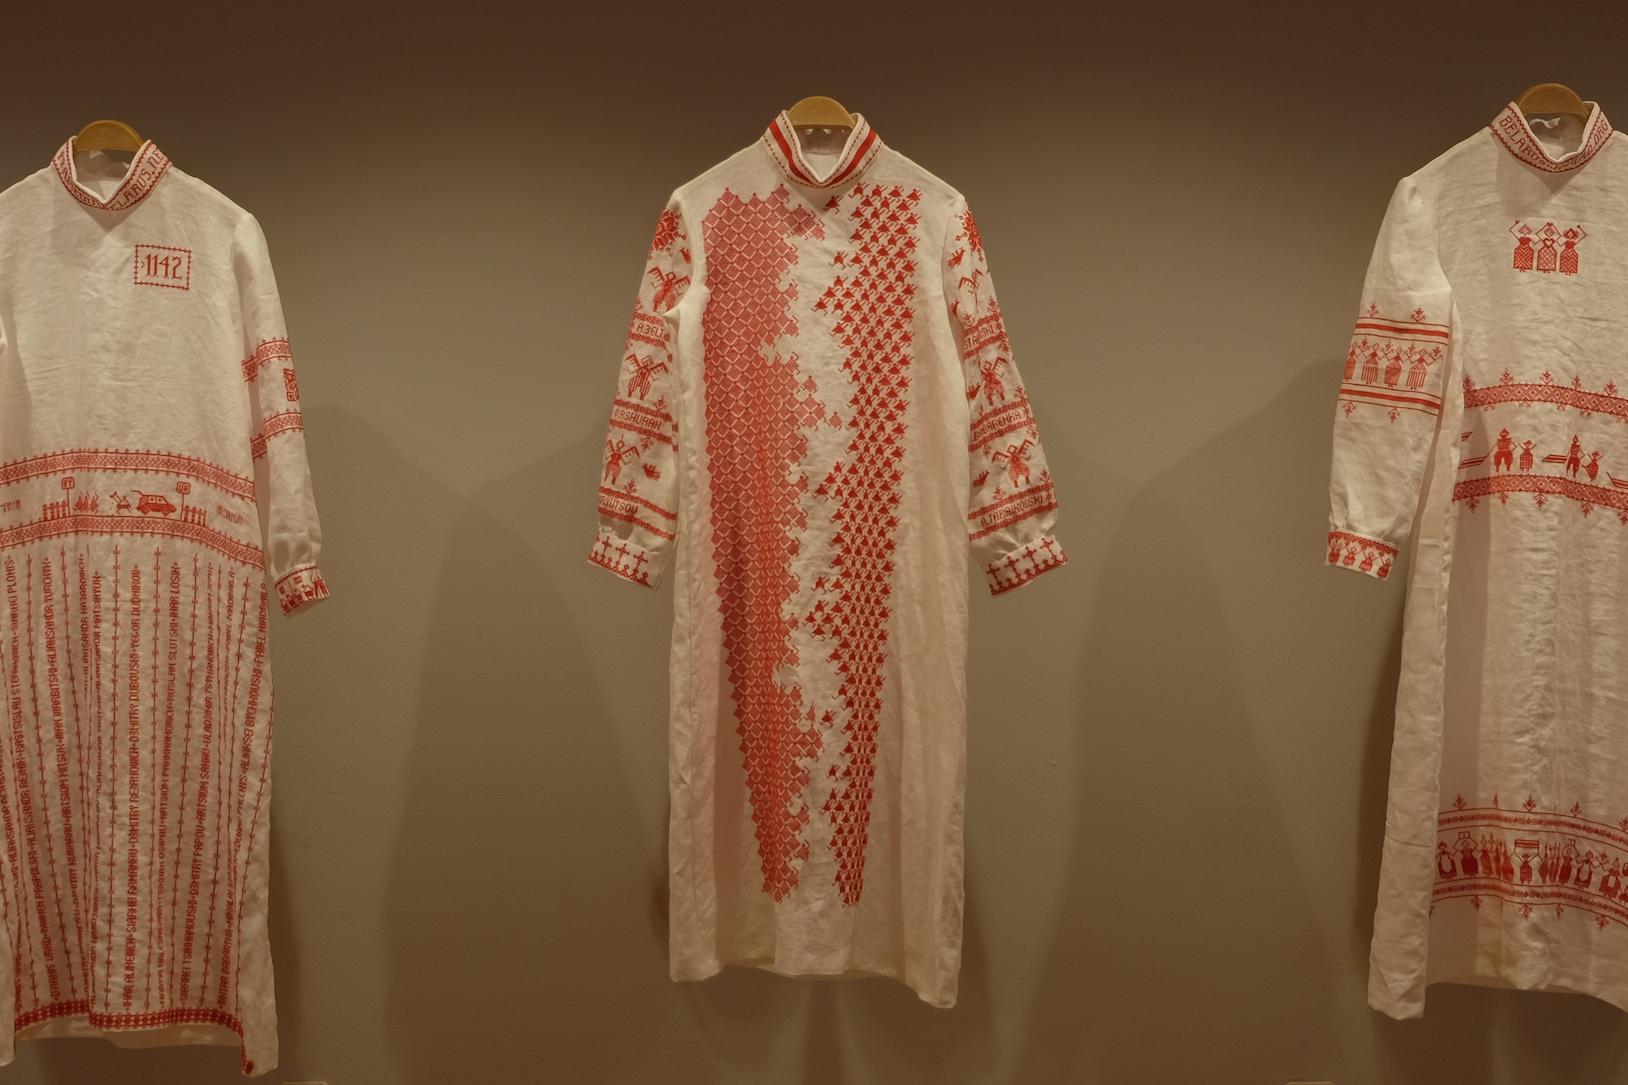 Drei Kleider zu Ehren der Preisträgerinnen. Tatkräftige Unterstützung hatte die Kunstwerkstatt von Spectrum von den Frauen des Aachener Sticktreffs.